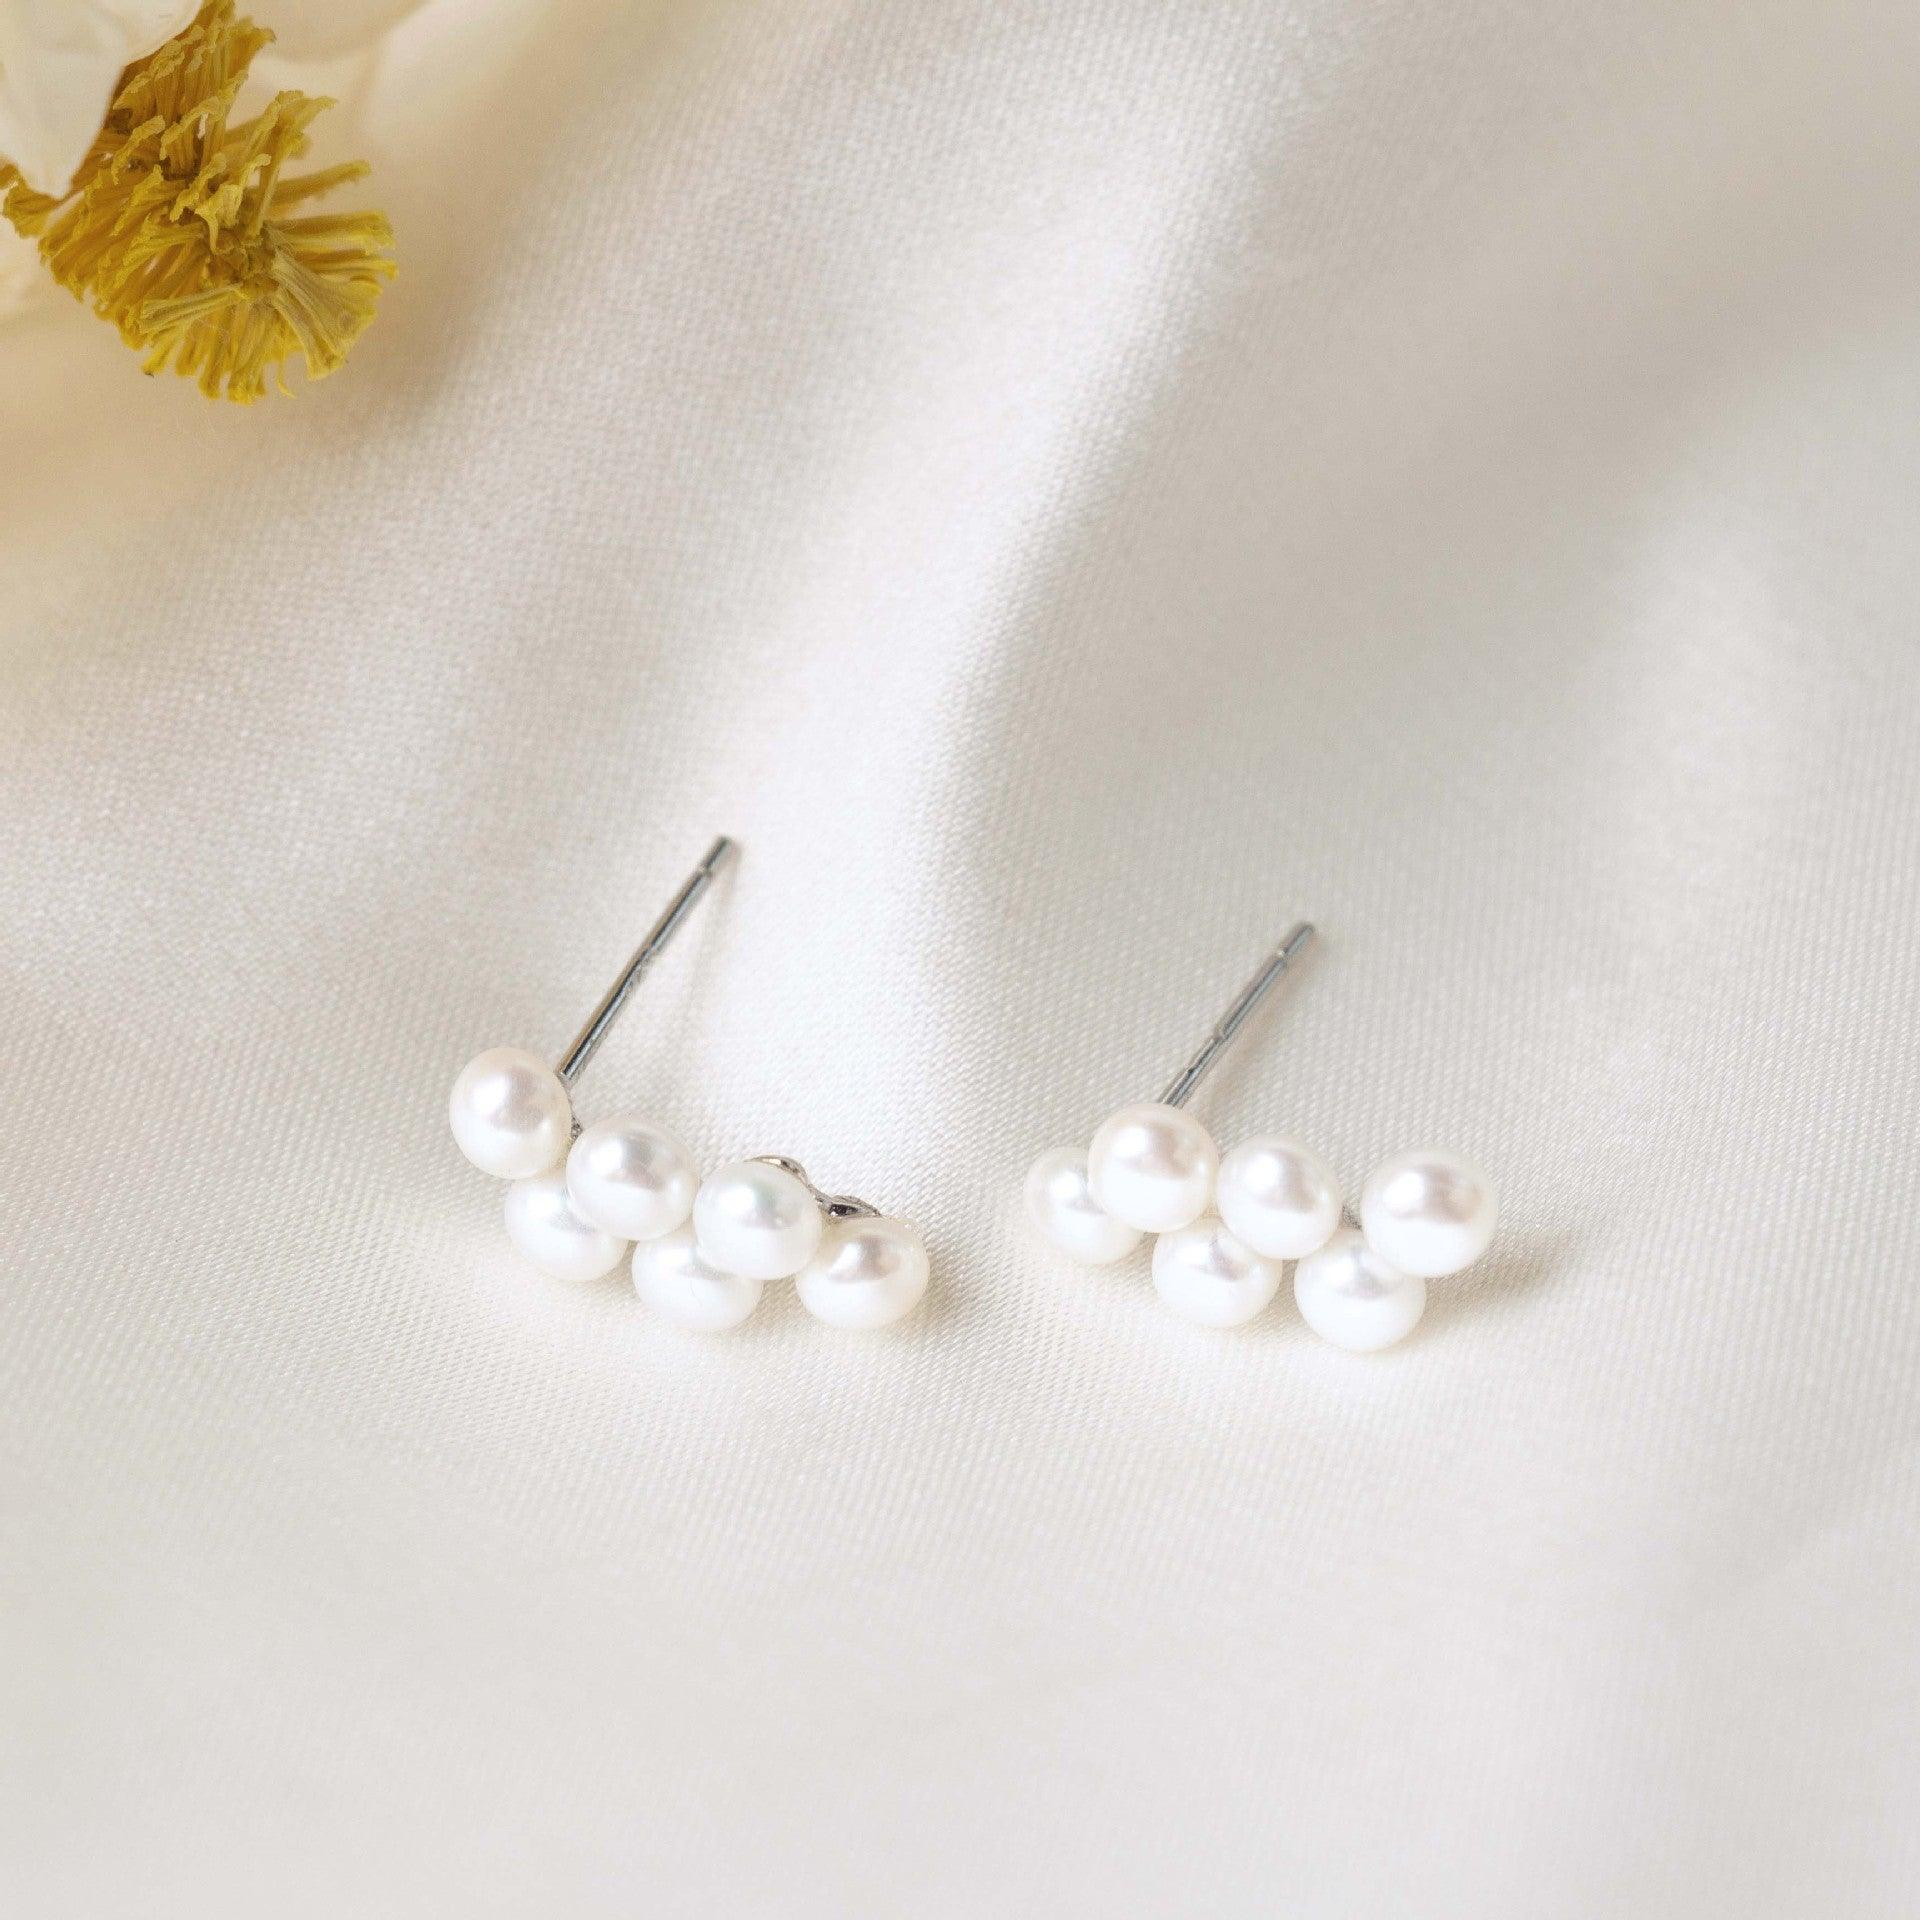 Sterling Silver Grape Stud Earrings - Vineyard-Inspired Elegance